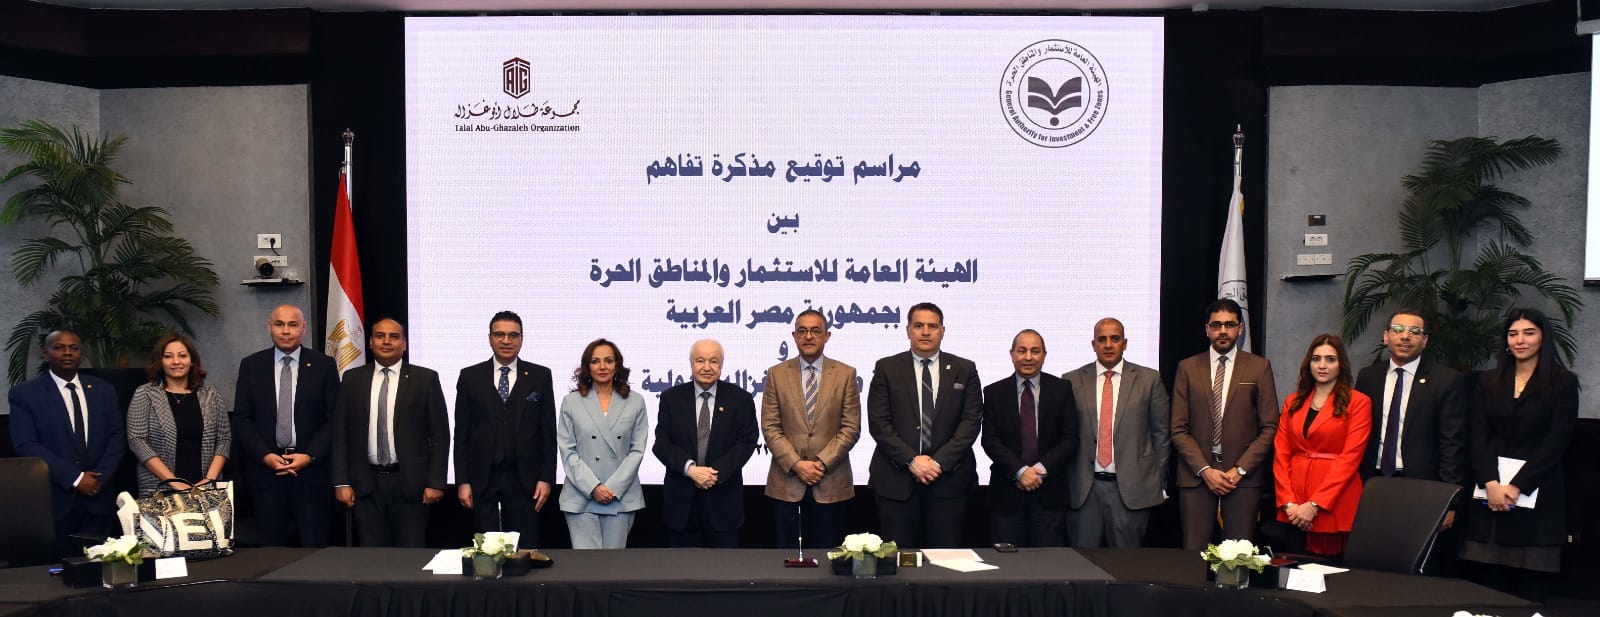 هيئة الاستثمار تعقد شراكة مع أكبر شركة لحماية الملكية الفكرية في العالم لتطوير بيئة الاستثمار في مصر